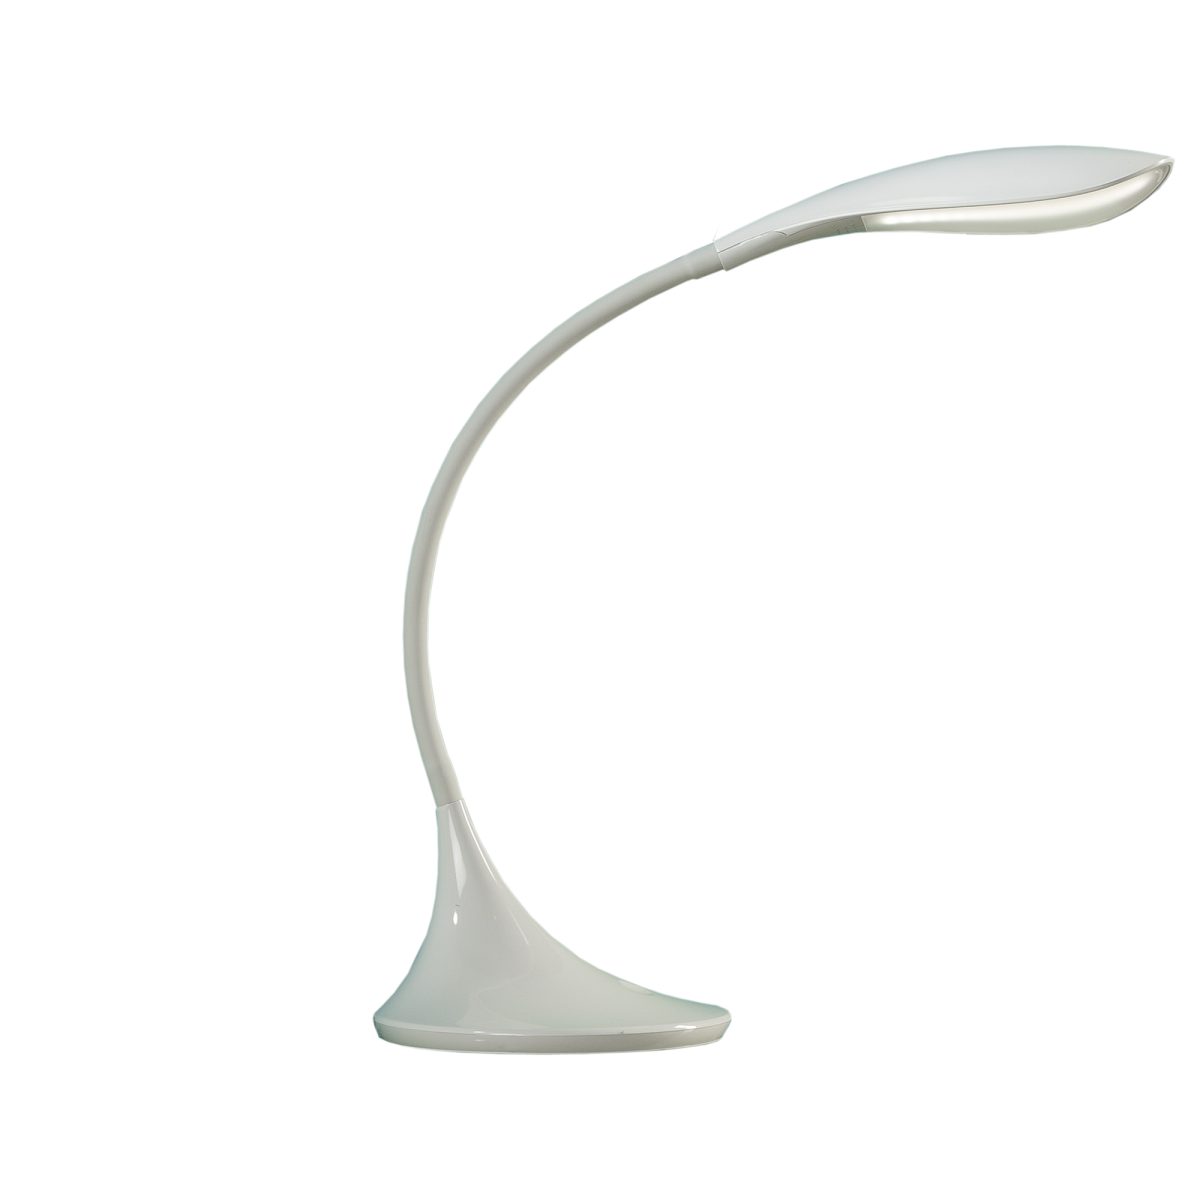 SWAN Lámpara de mesa de Schuller. Medidas: L 30 x A 45 (Amin 30, Amax 55) x F 18 cm. Color: Blanco